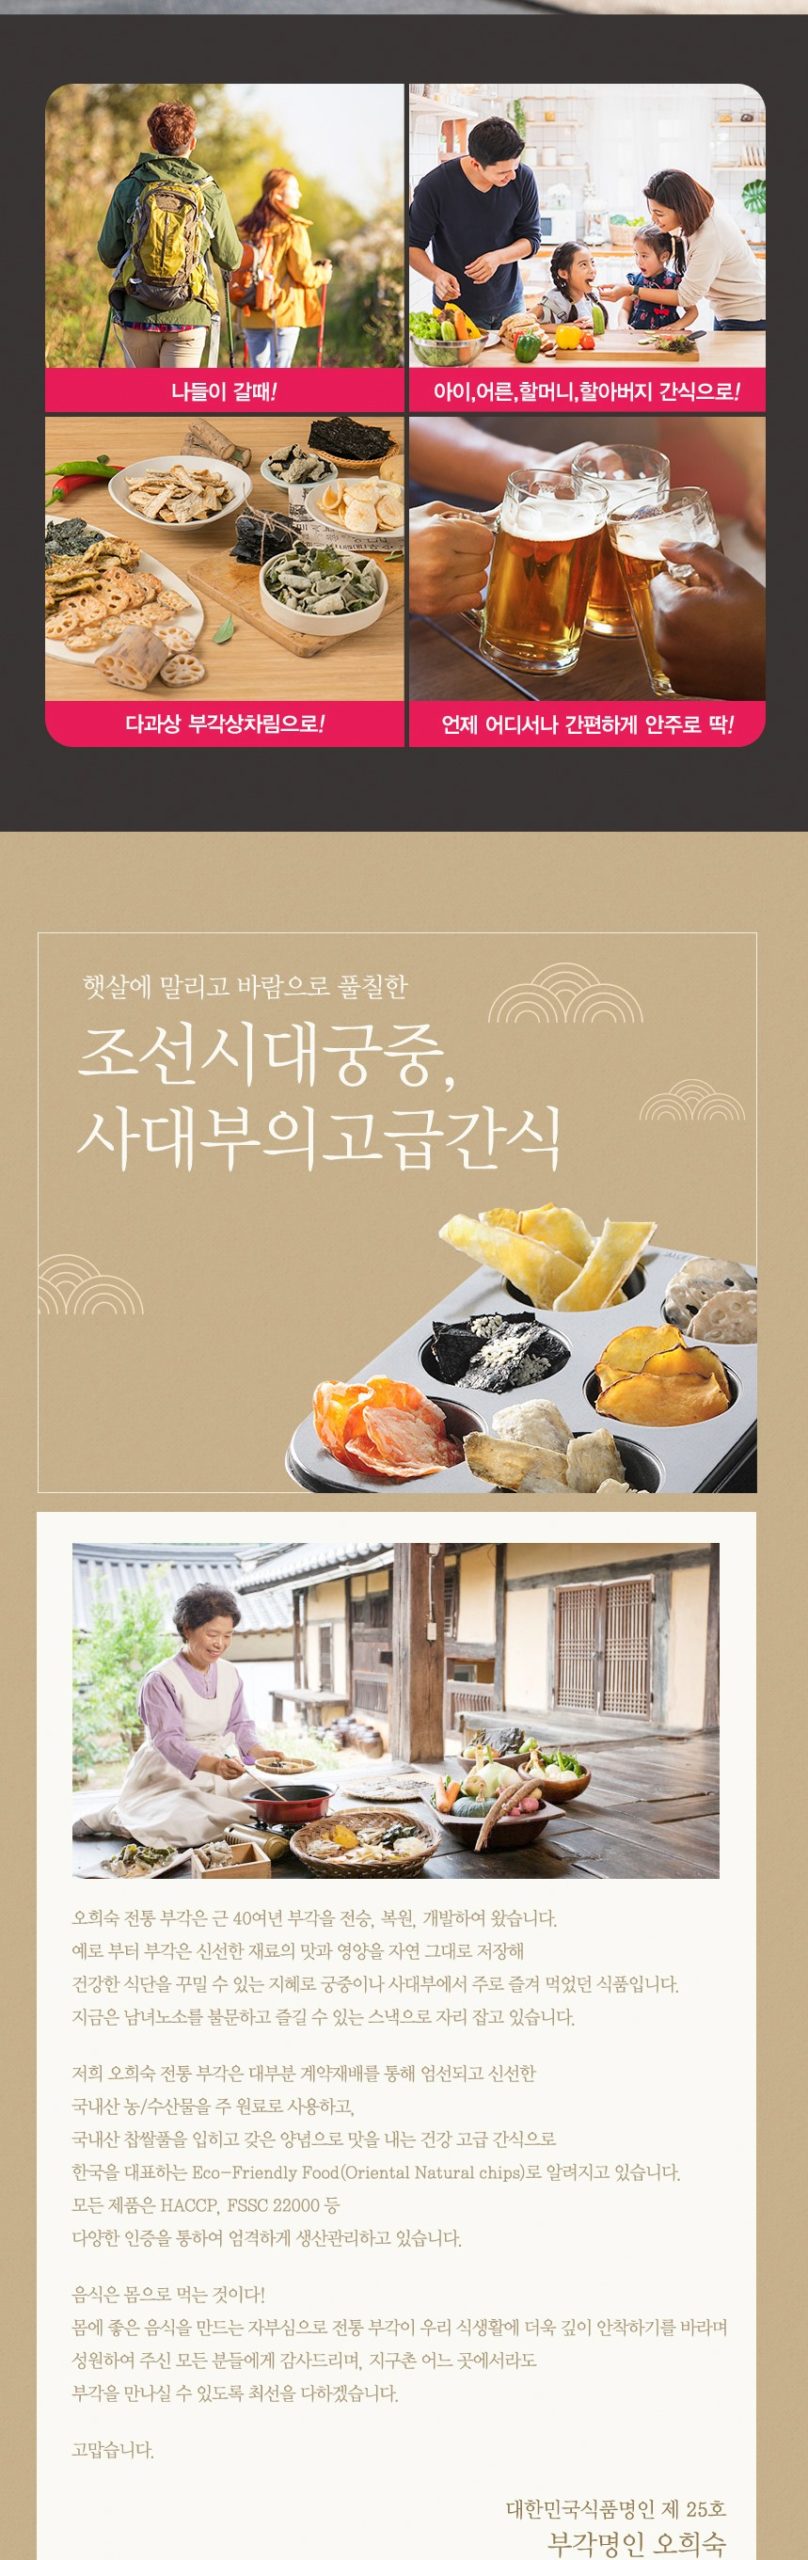 韓國食品-[오희숙] 찹쌀미역부각 30g